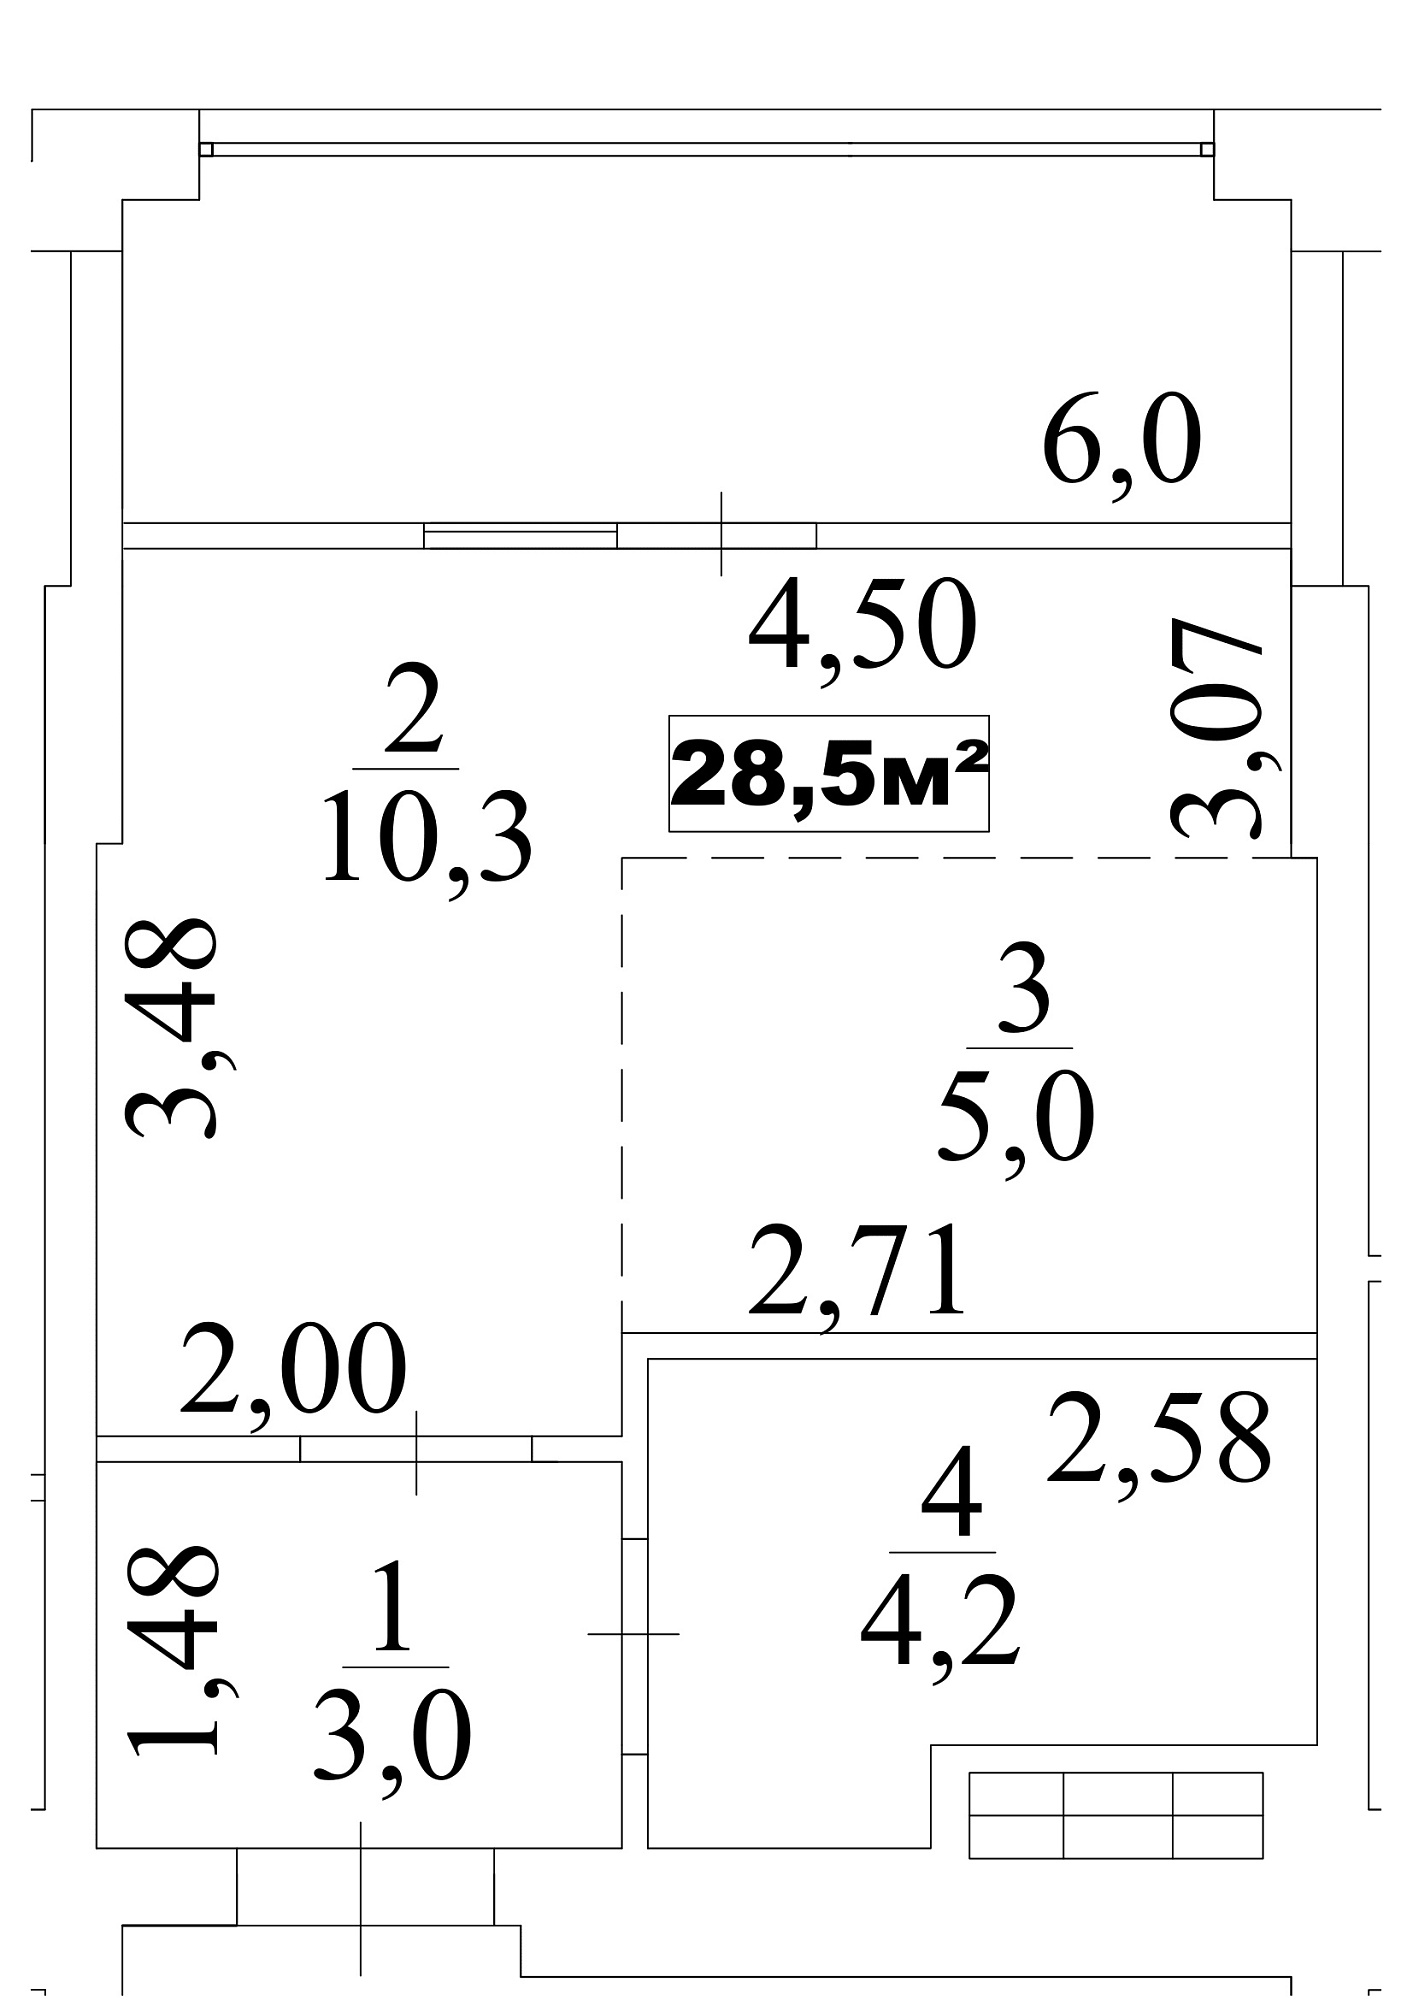 Планування Smart-квартира площею 28.5м2, AB-10-03/00023.